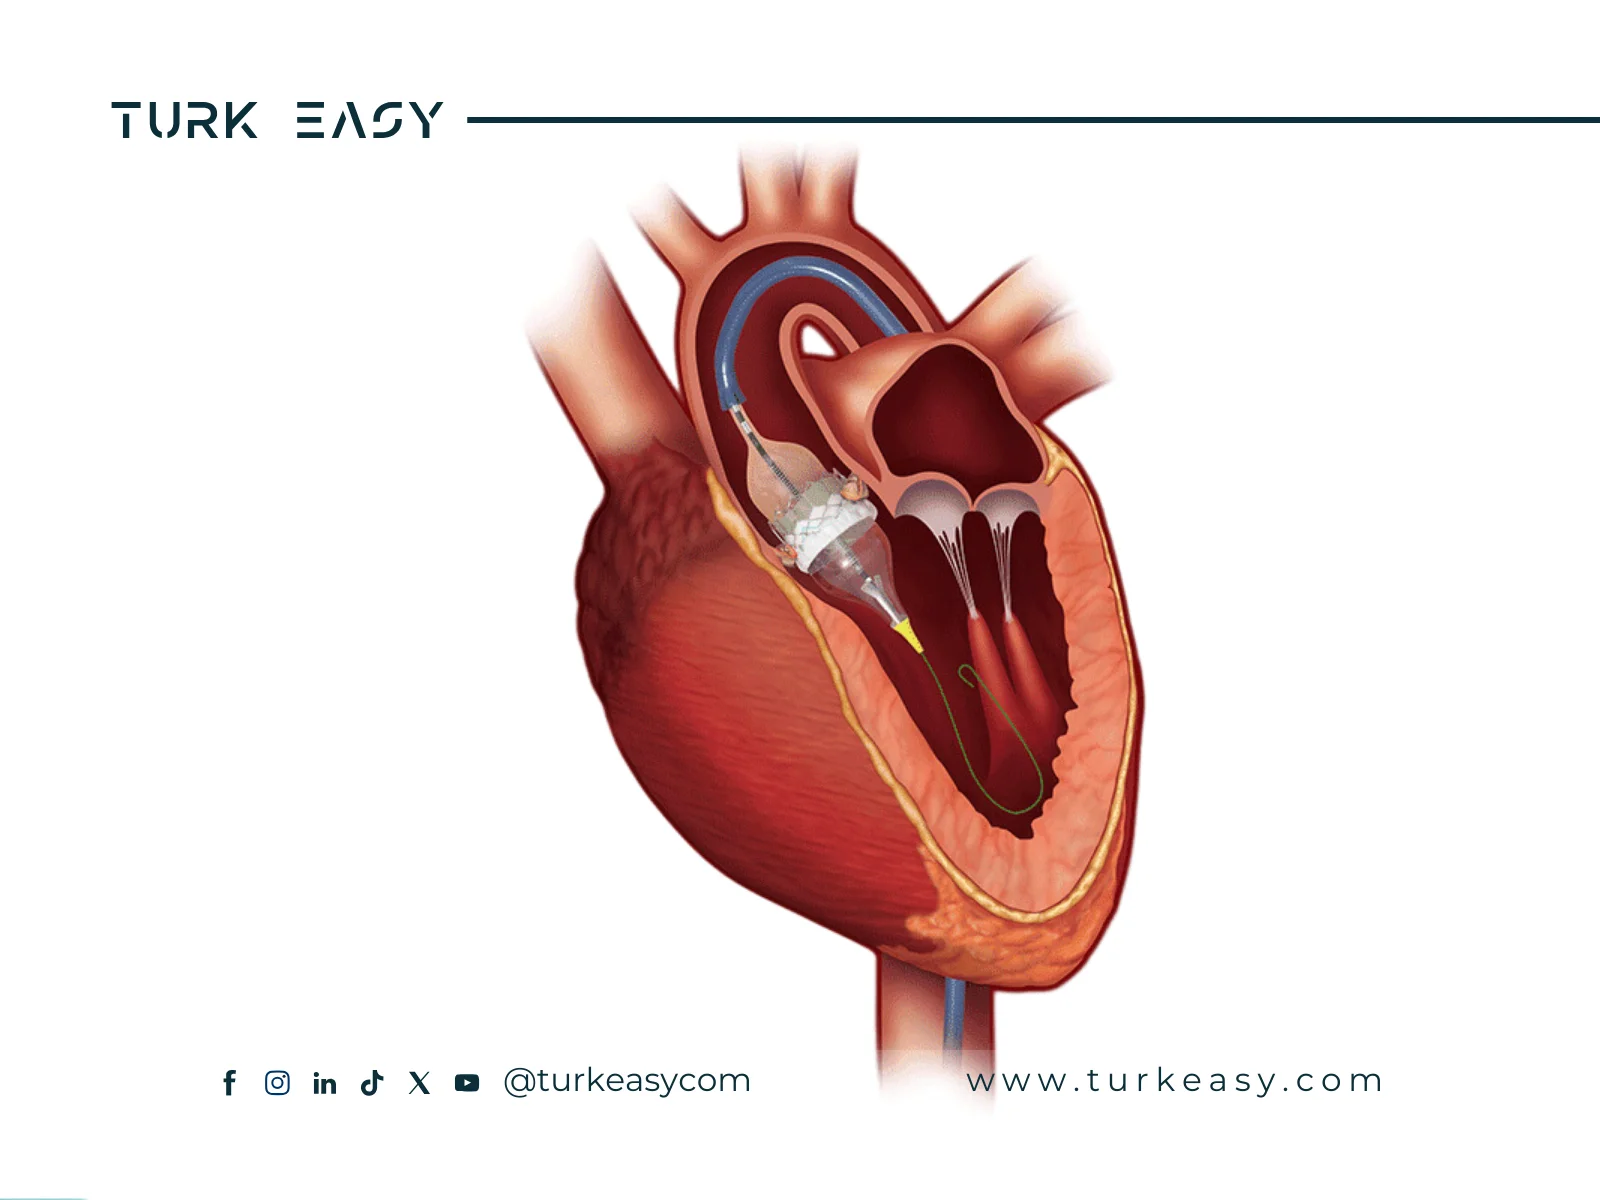 Remplacement de la valve aortique 2024 | Turk Easy